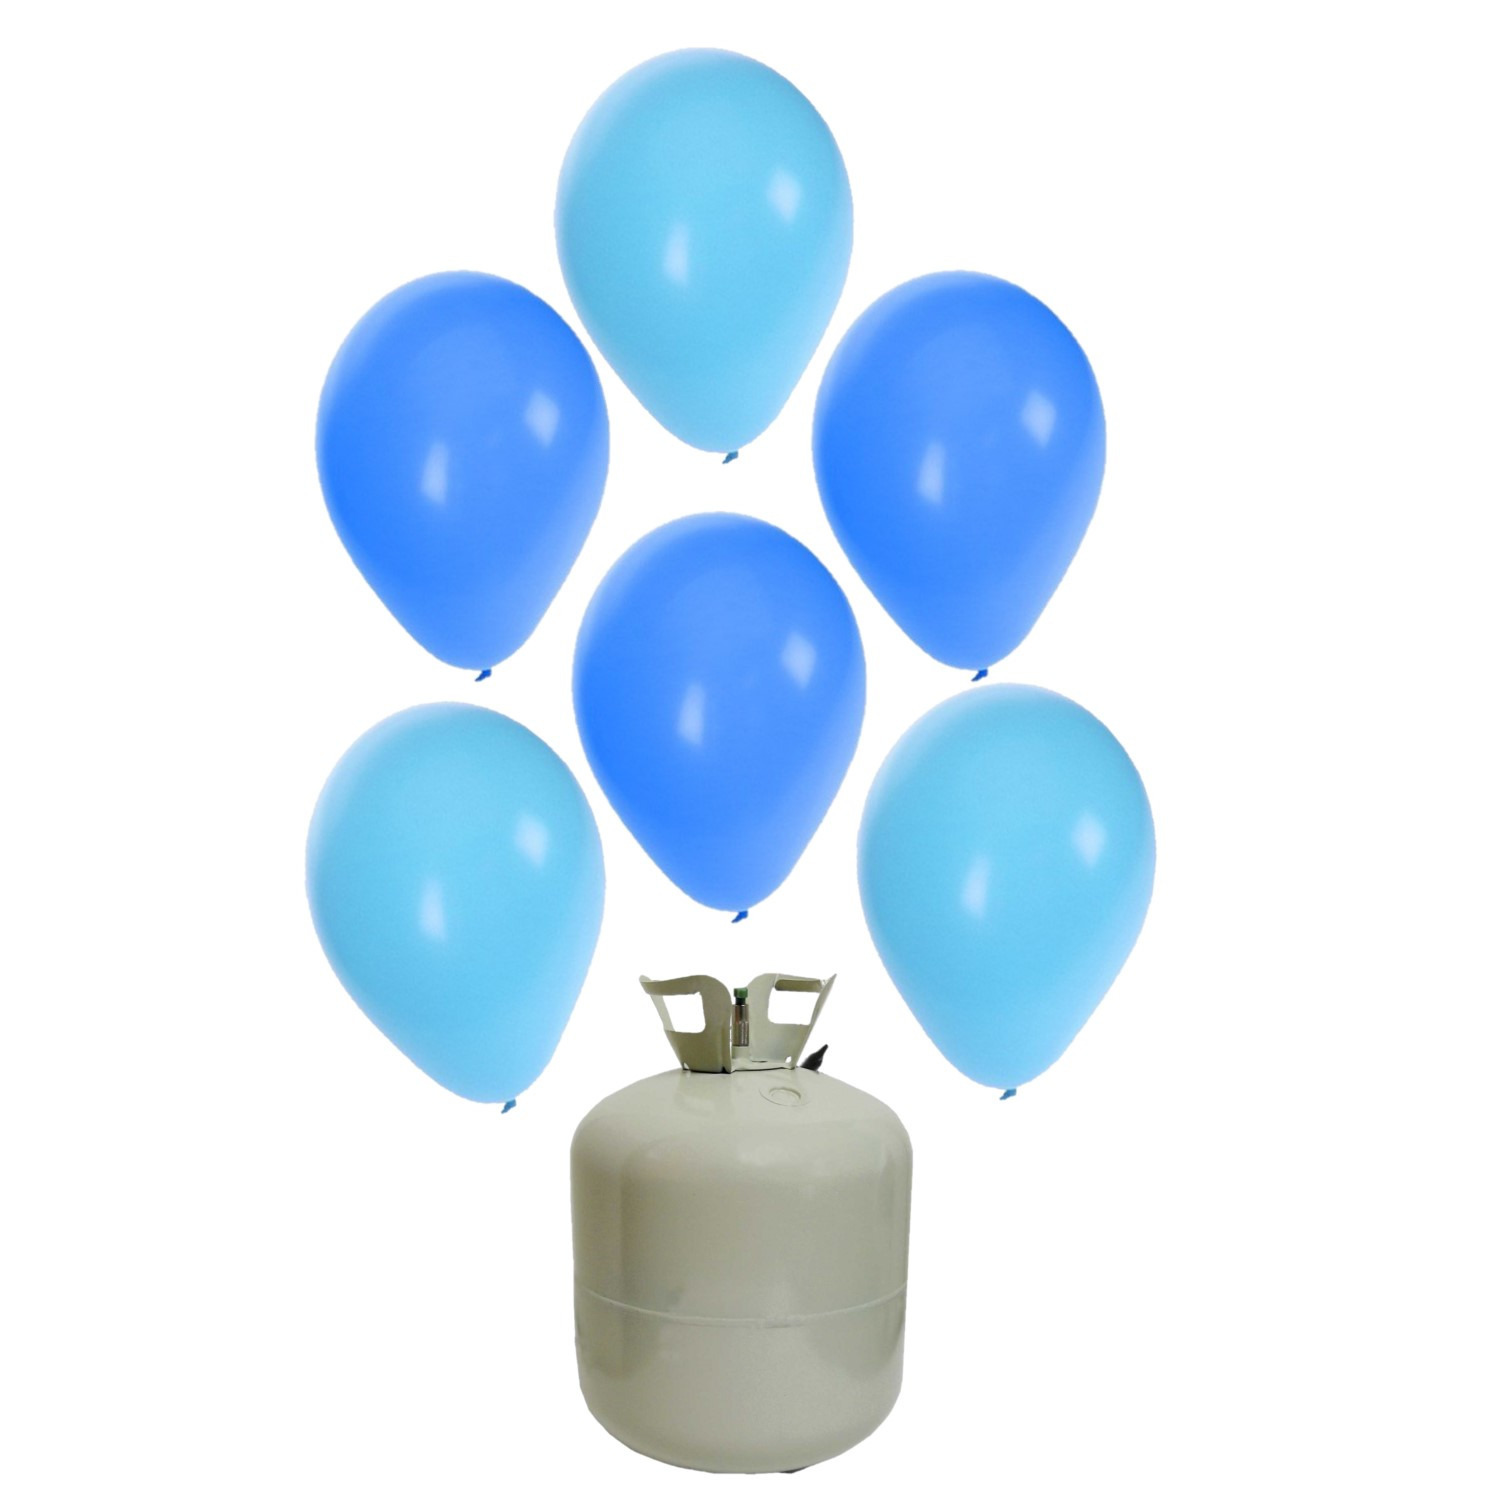 20x Helium ballonnen blauw/licht blauw 27 cm jongetje geboorte + helium tank/cilinder -